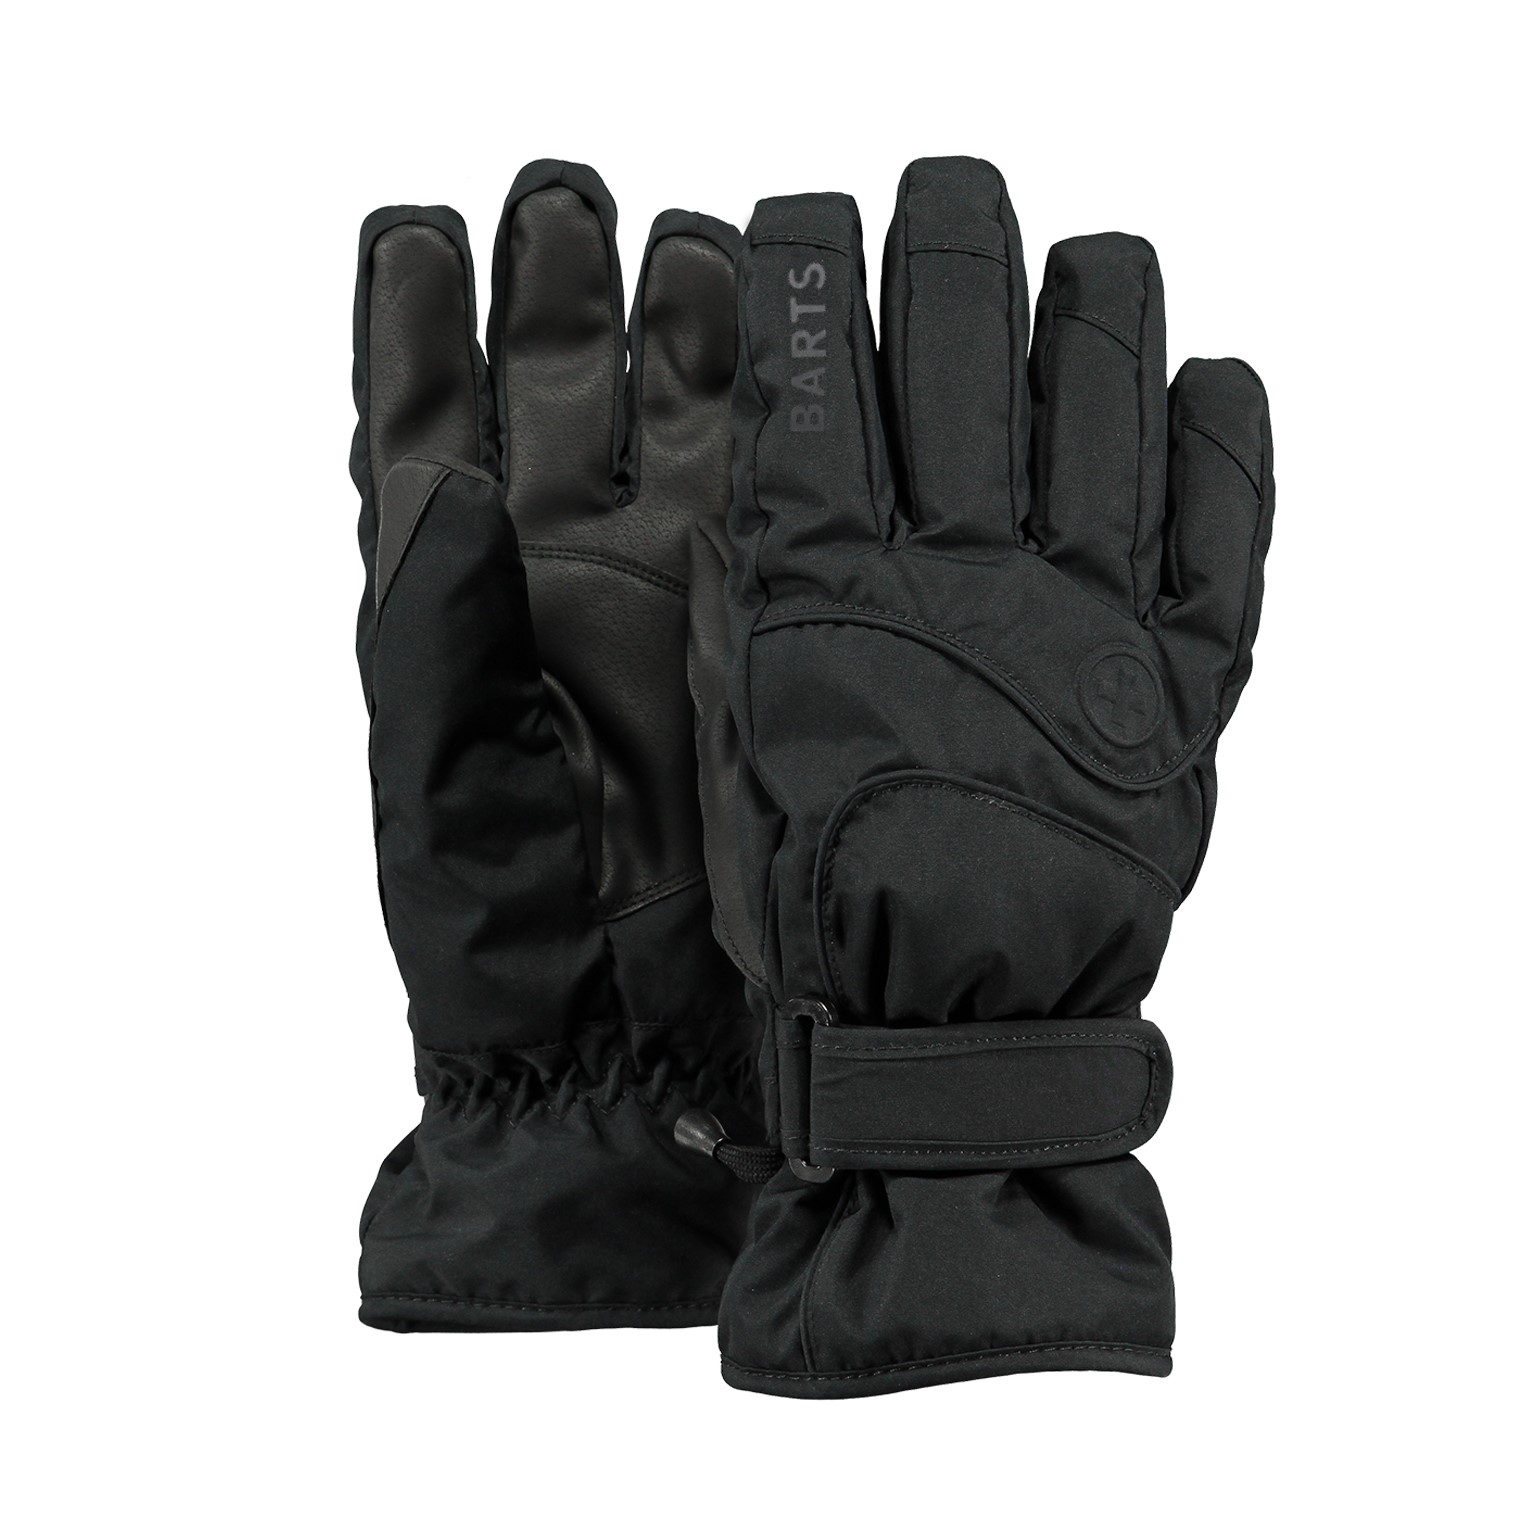 rayon gevoerd Accessoires Handschoenen & wanten Winterhandschoenen WINTER handschoenen voor heren haarspelleer ZWART 